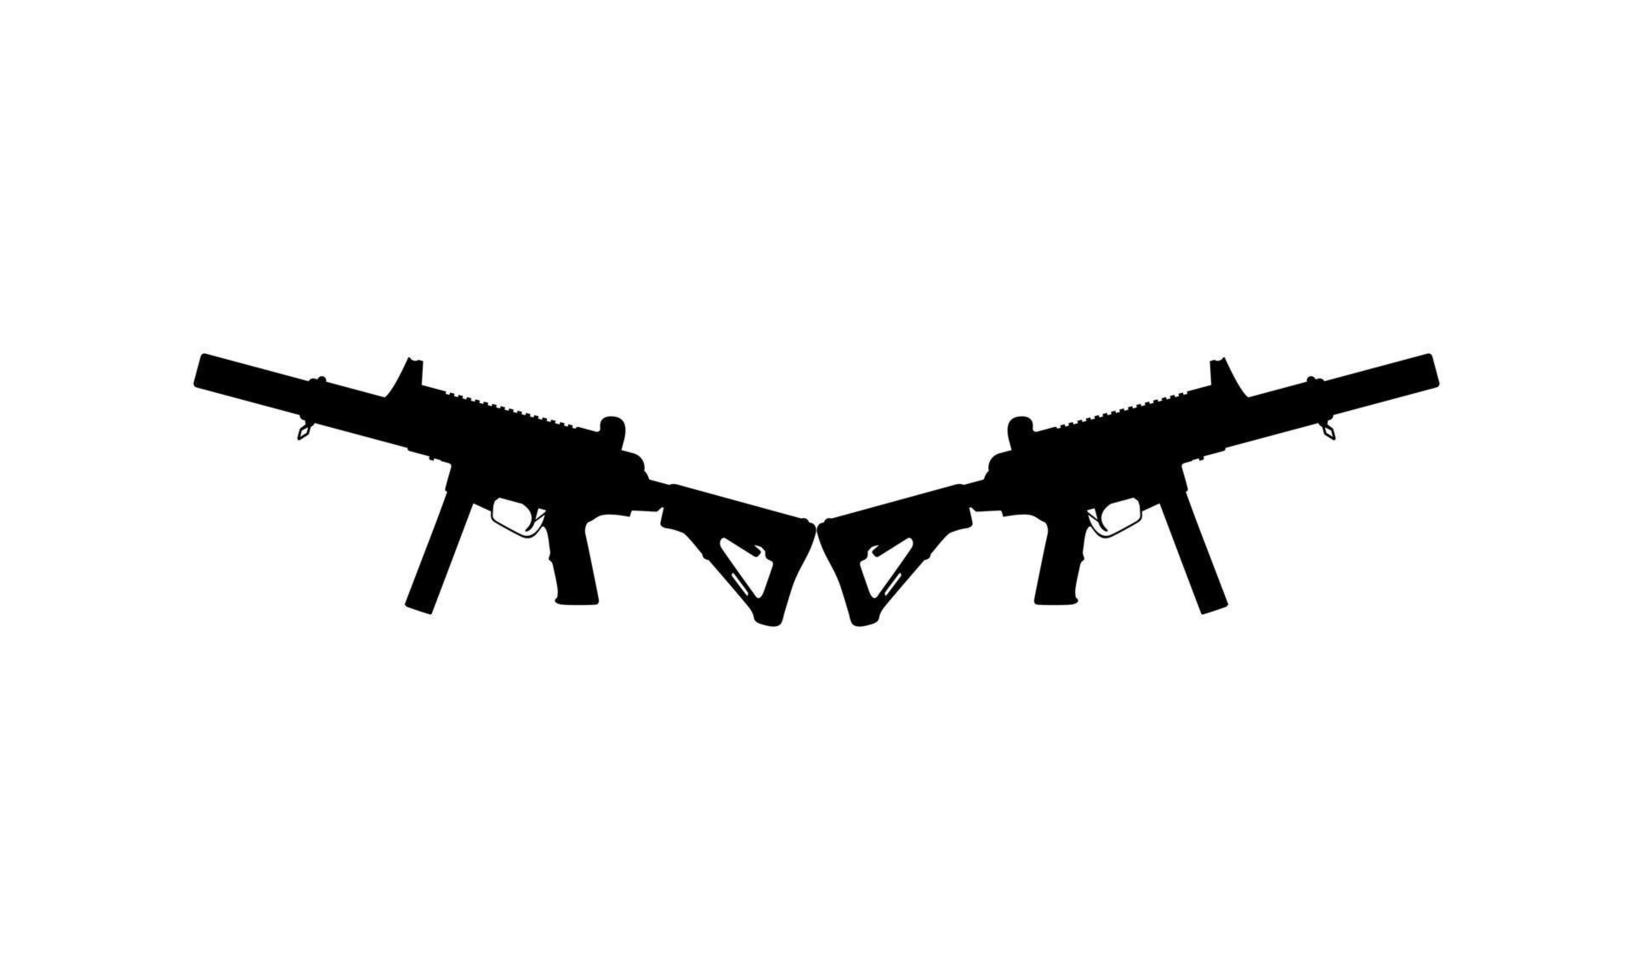 silhueta de arma de pistola para logotipo, pictograma, ilustração de arte, site ou elemento de design gráfico. ilustração vetorial vetor